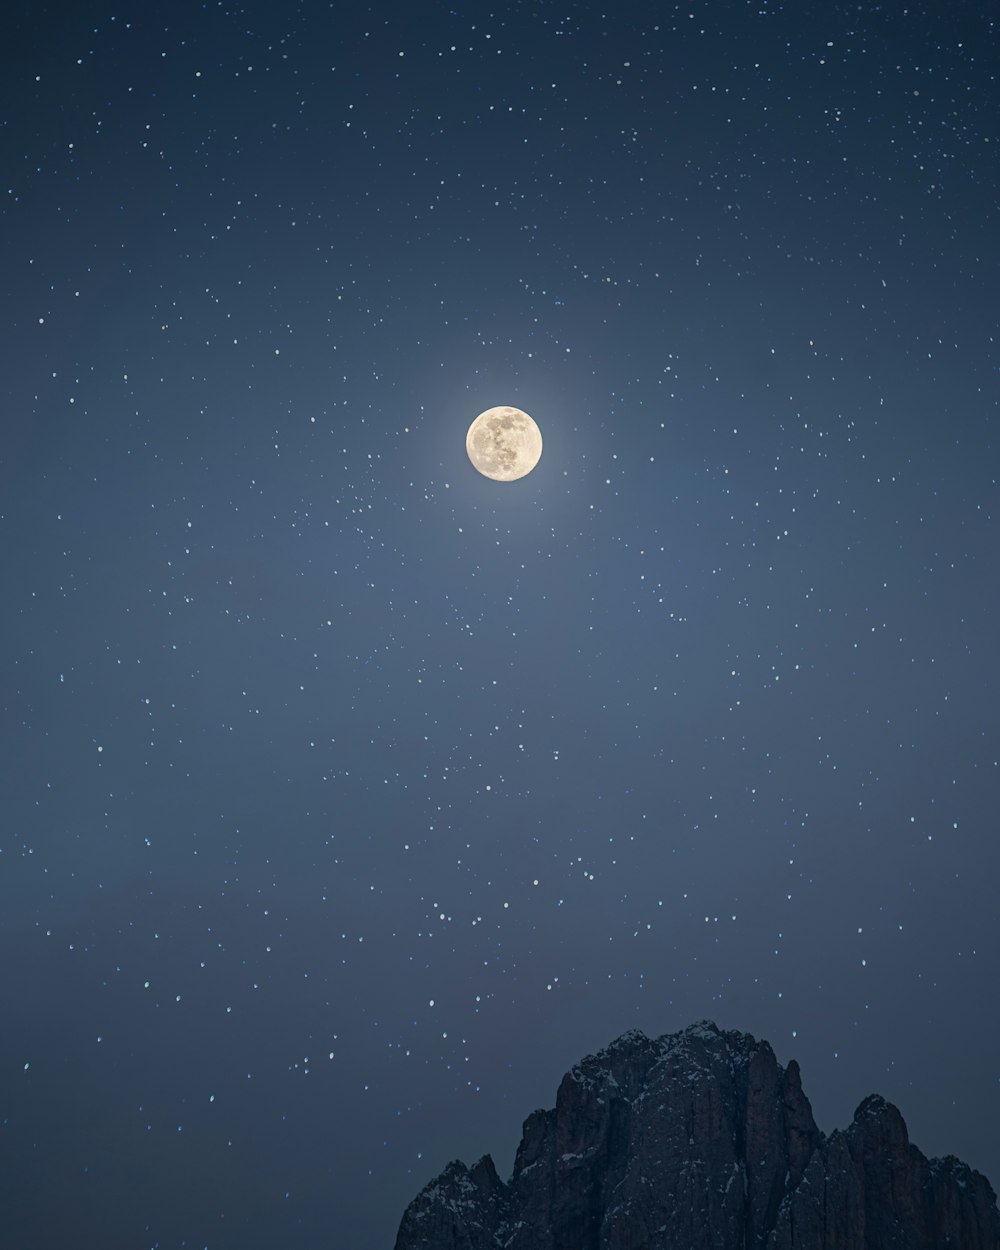 Una luna llena se ve por encima de una cadena montañosa